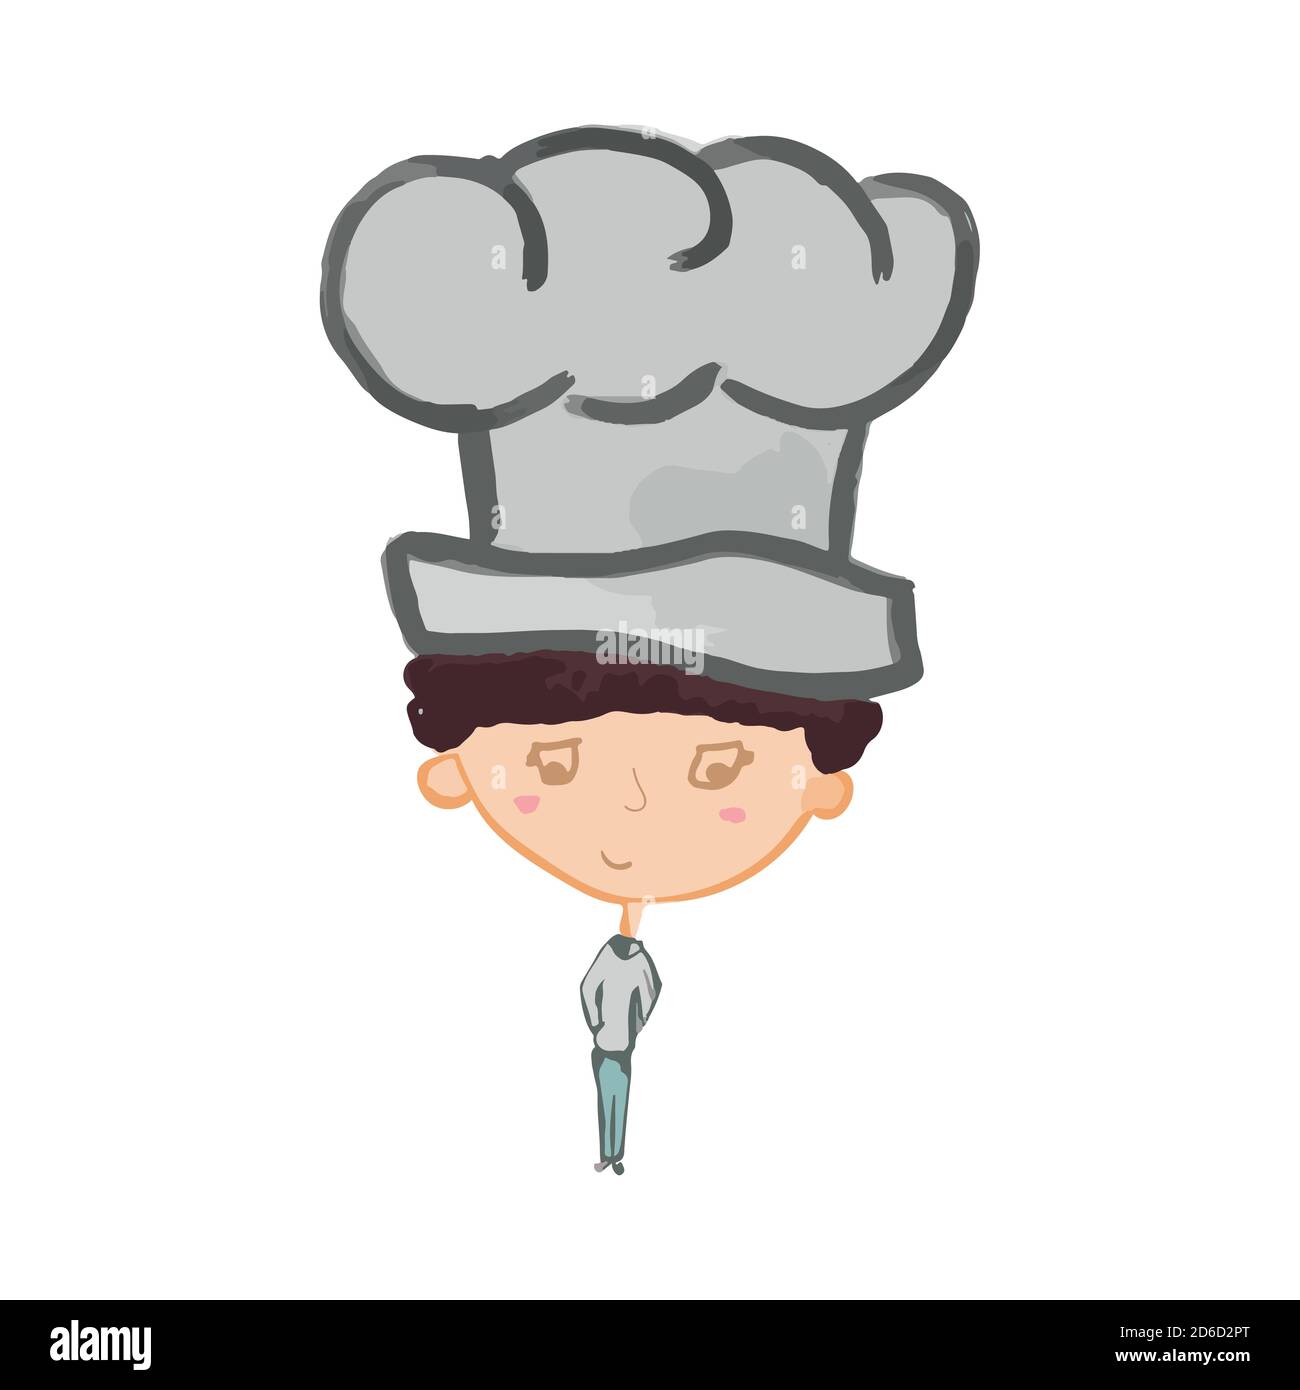 Hand gezeichnet Charakter Koch Junge im Cartoon-Stil Stock-Vektorgrafik -  Alamy